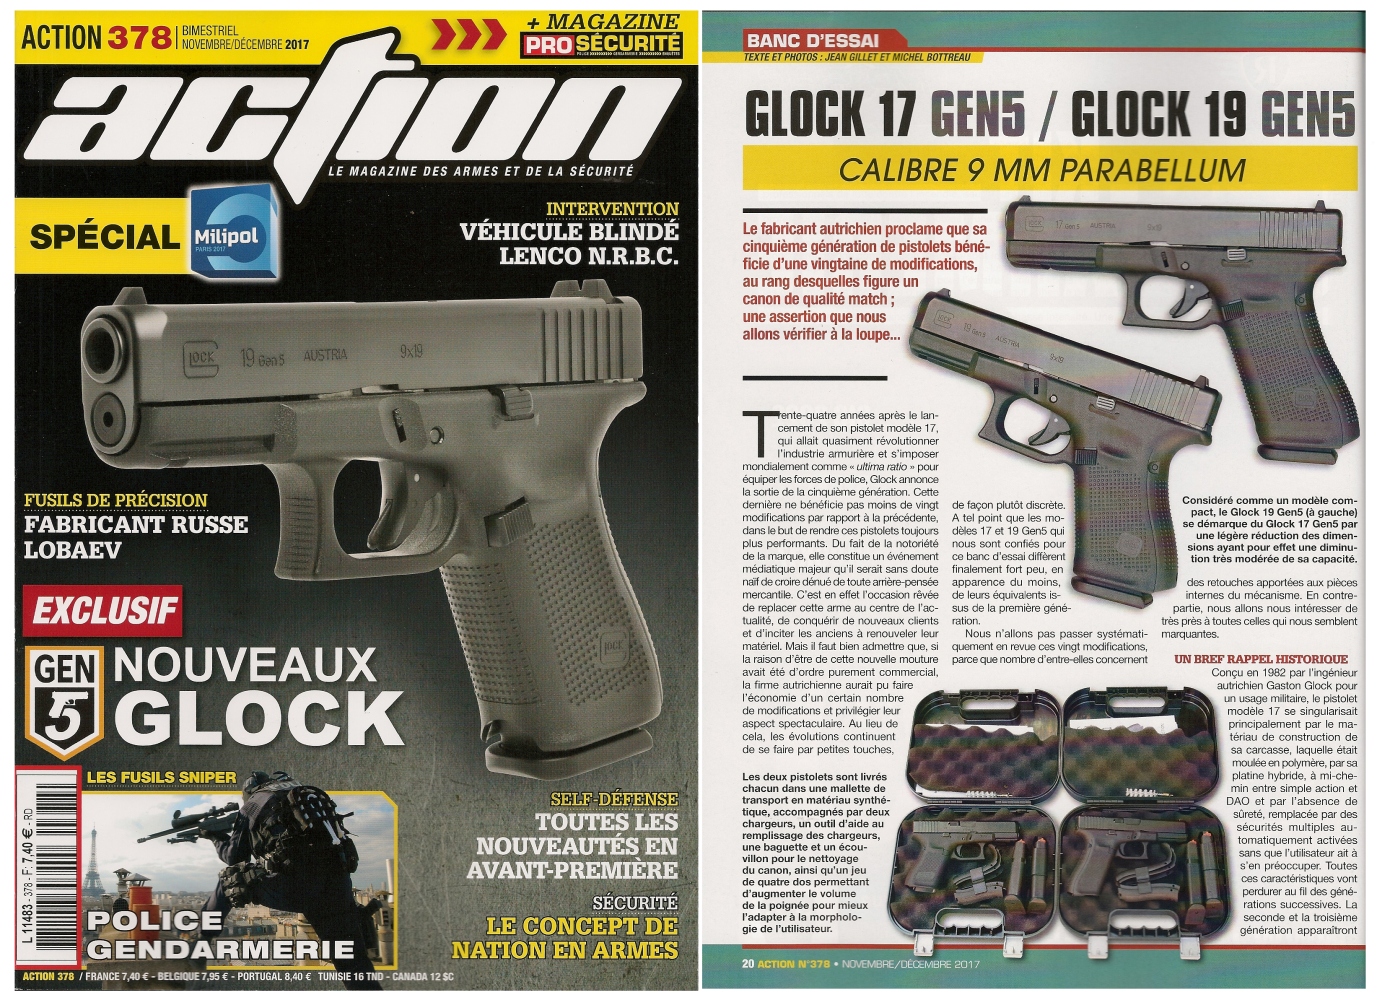 Le banc d’essai des pistolets Glock modèles 17 Gen5 et 19 Gen5 a été publié sur 7 pages dans le magazine Action n° 378 (novembre/décembre 2017). 